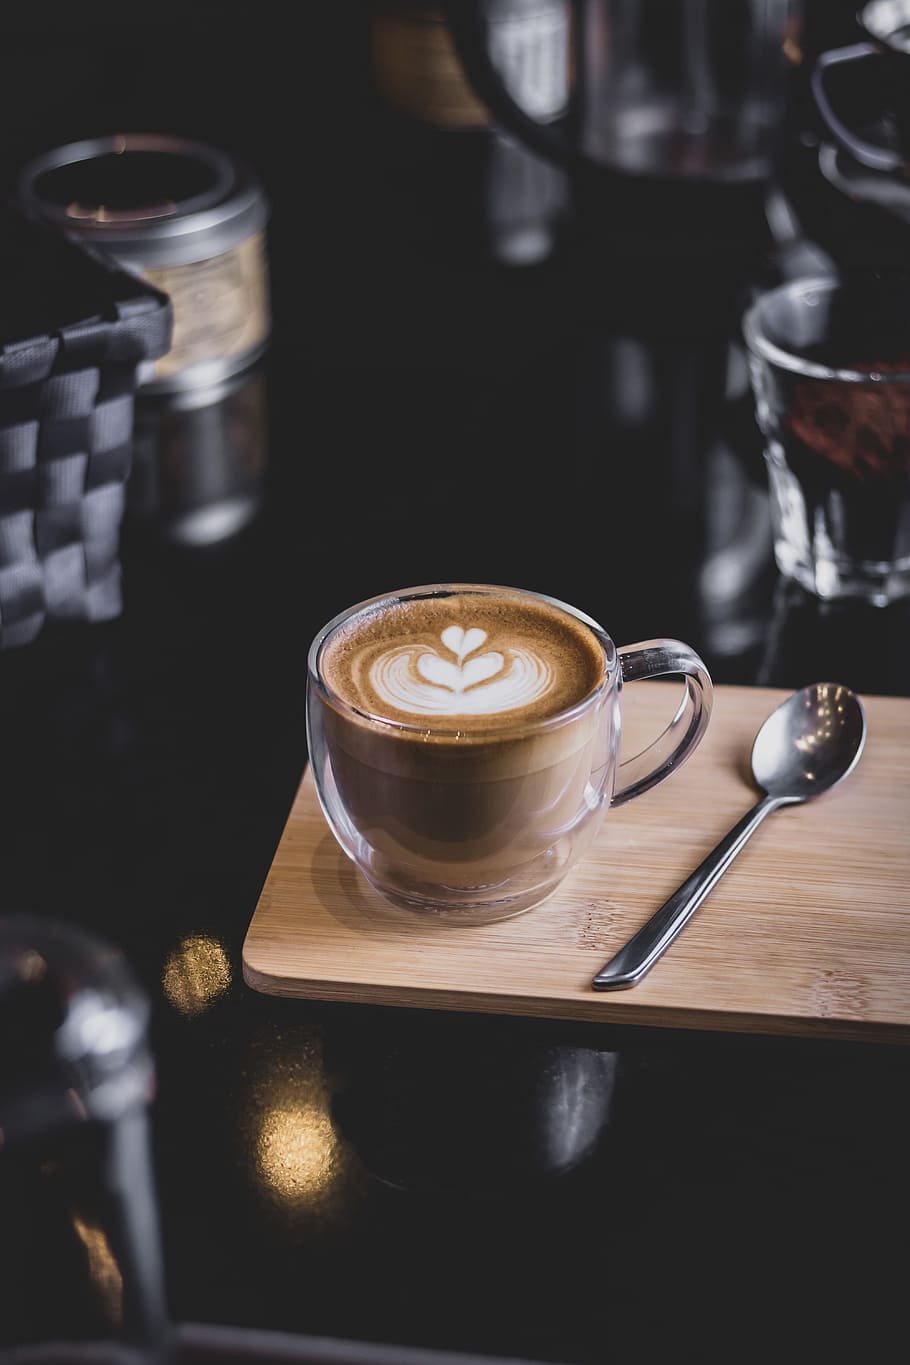 HD wallpaper: latte glass on board, coffee shop, cafe, espresso, art, caffeine